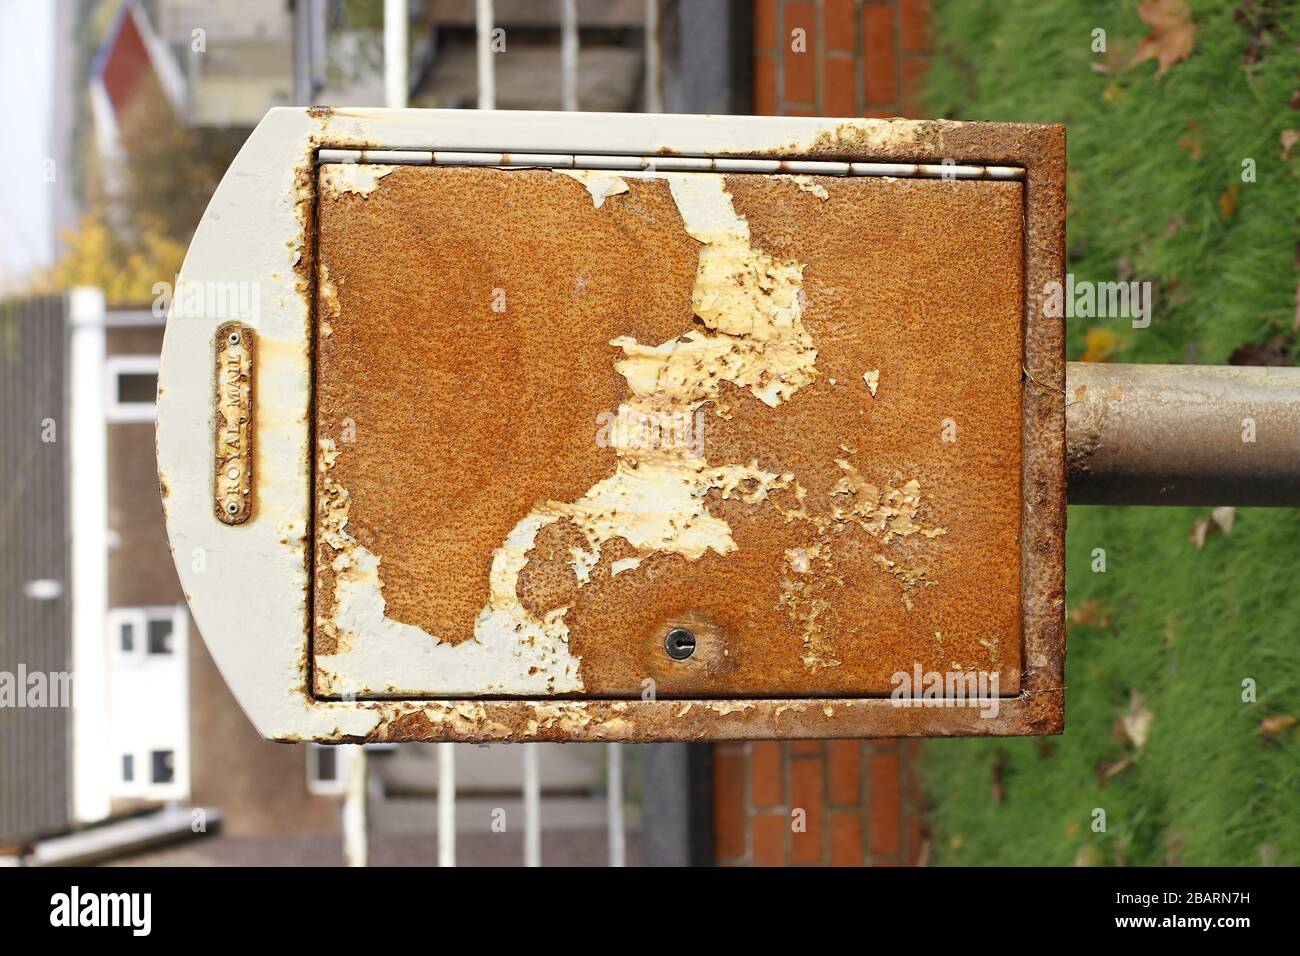 Una caja de correo Royal Mail de estilo antiguo ahora oxidada y desgastada al lado de una carretera en el Reino Unido Foto de stock